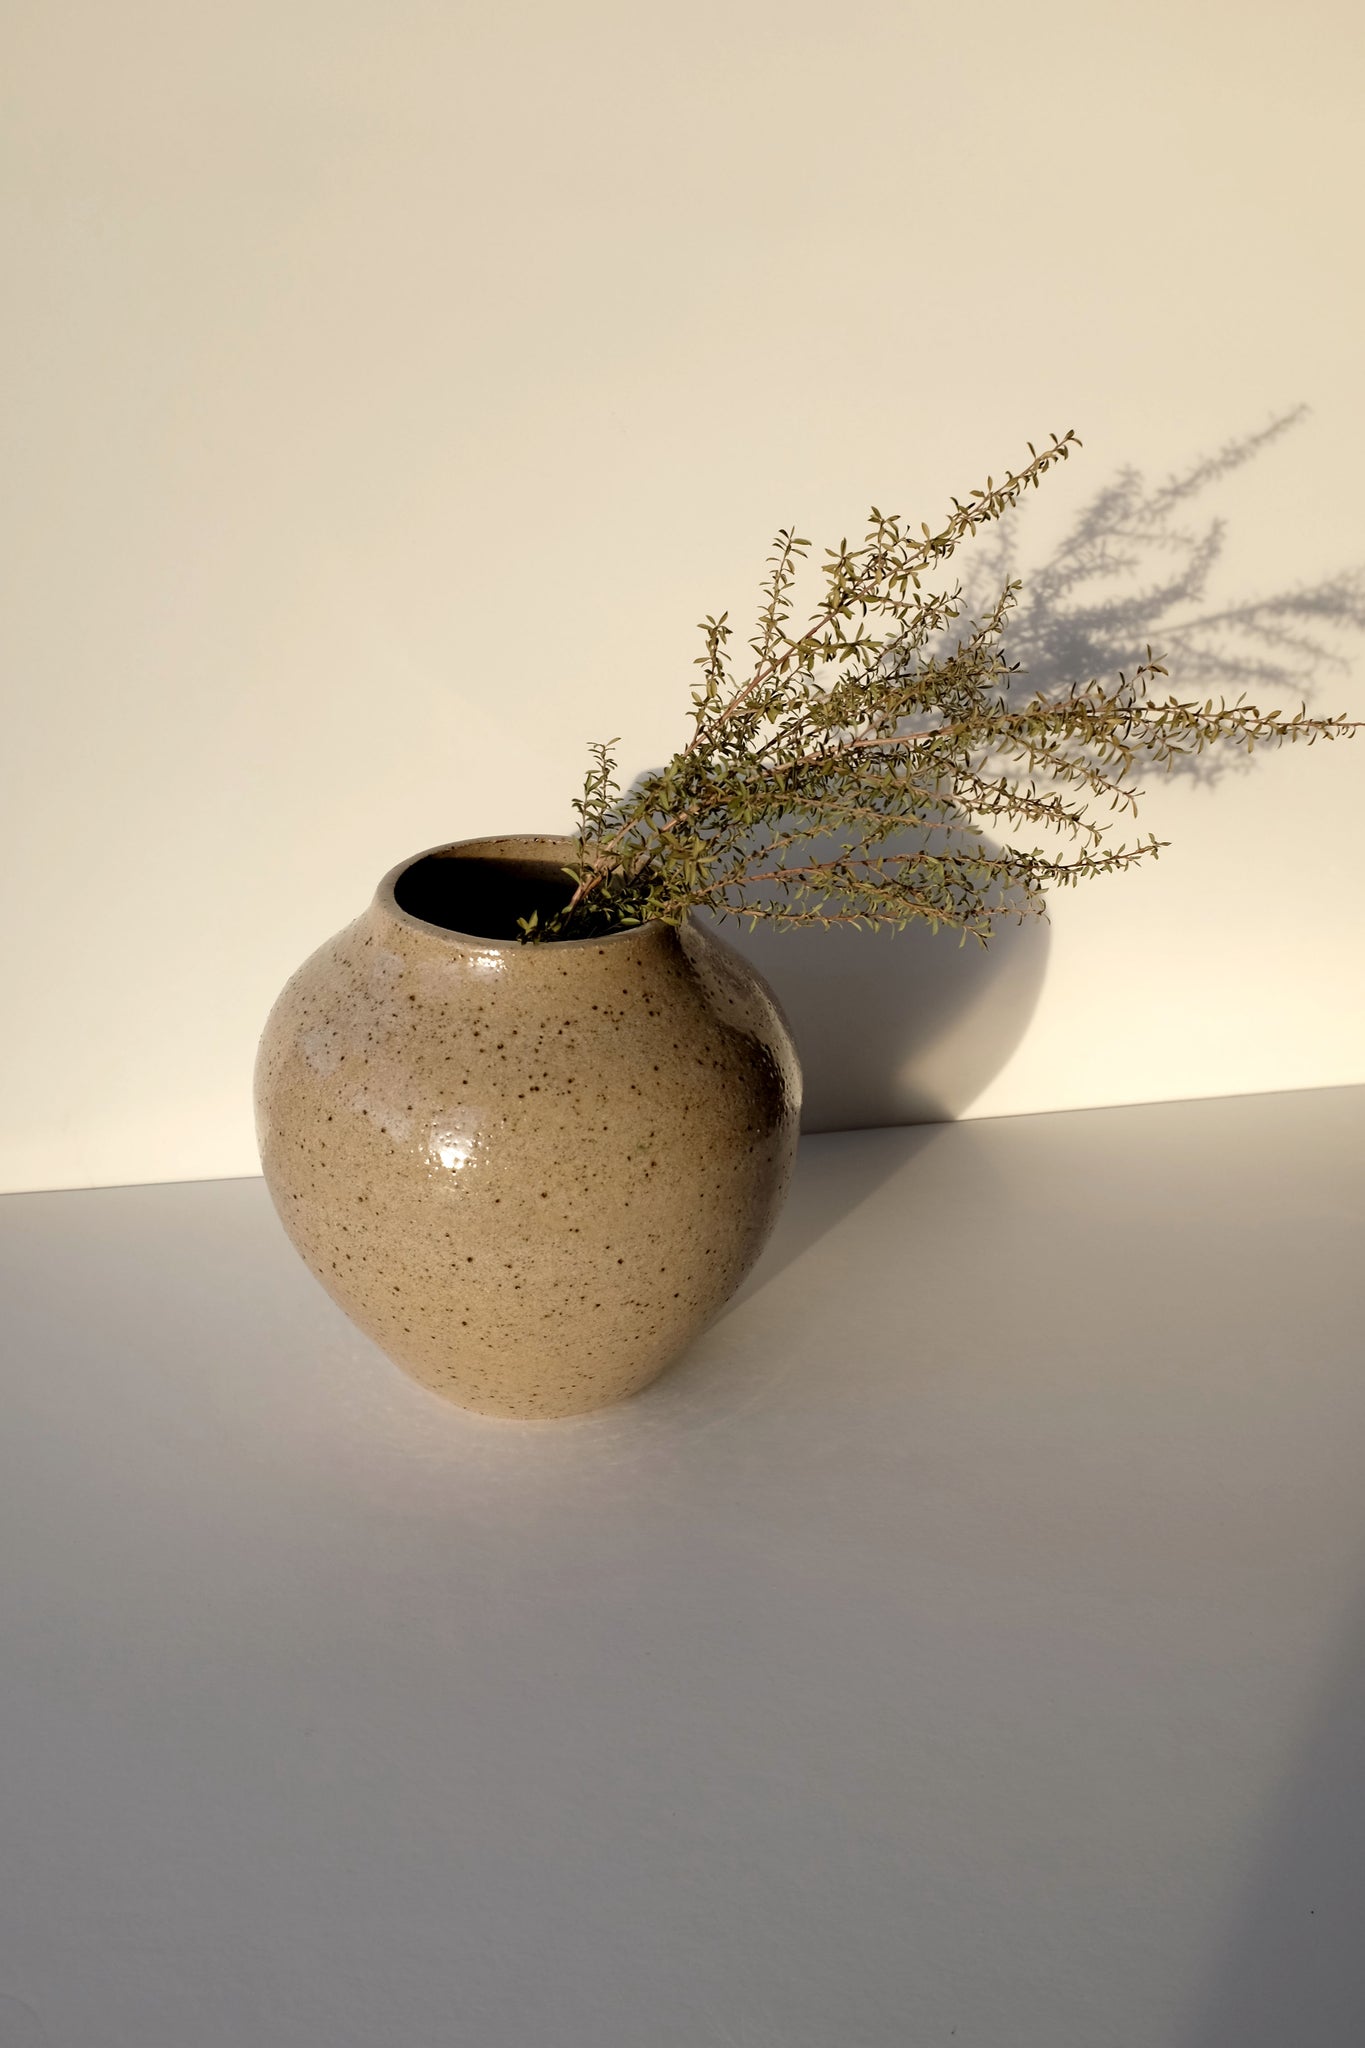 Speckled vase